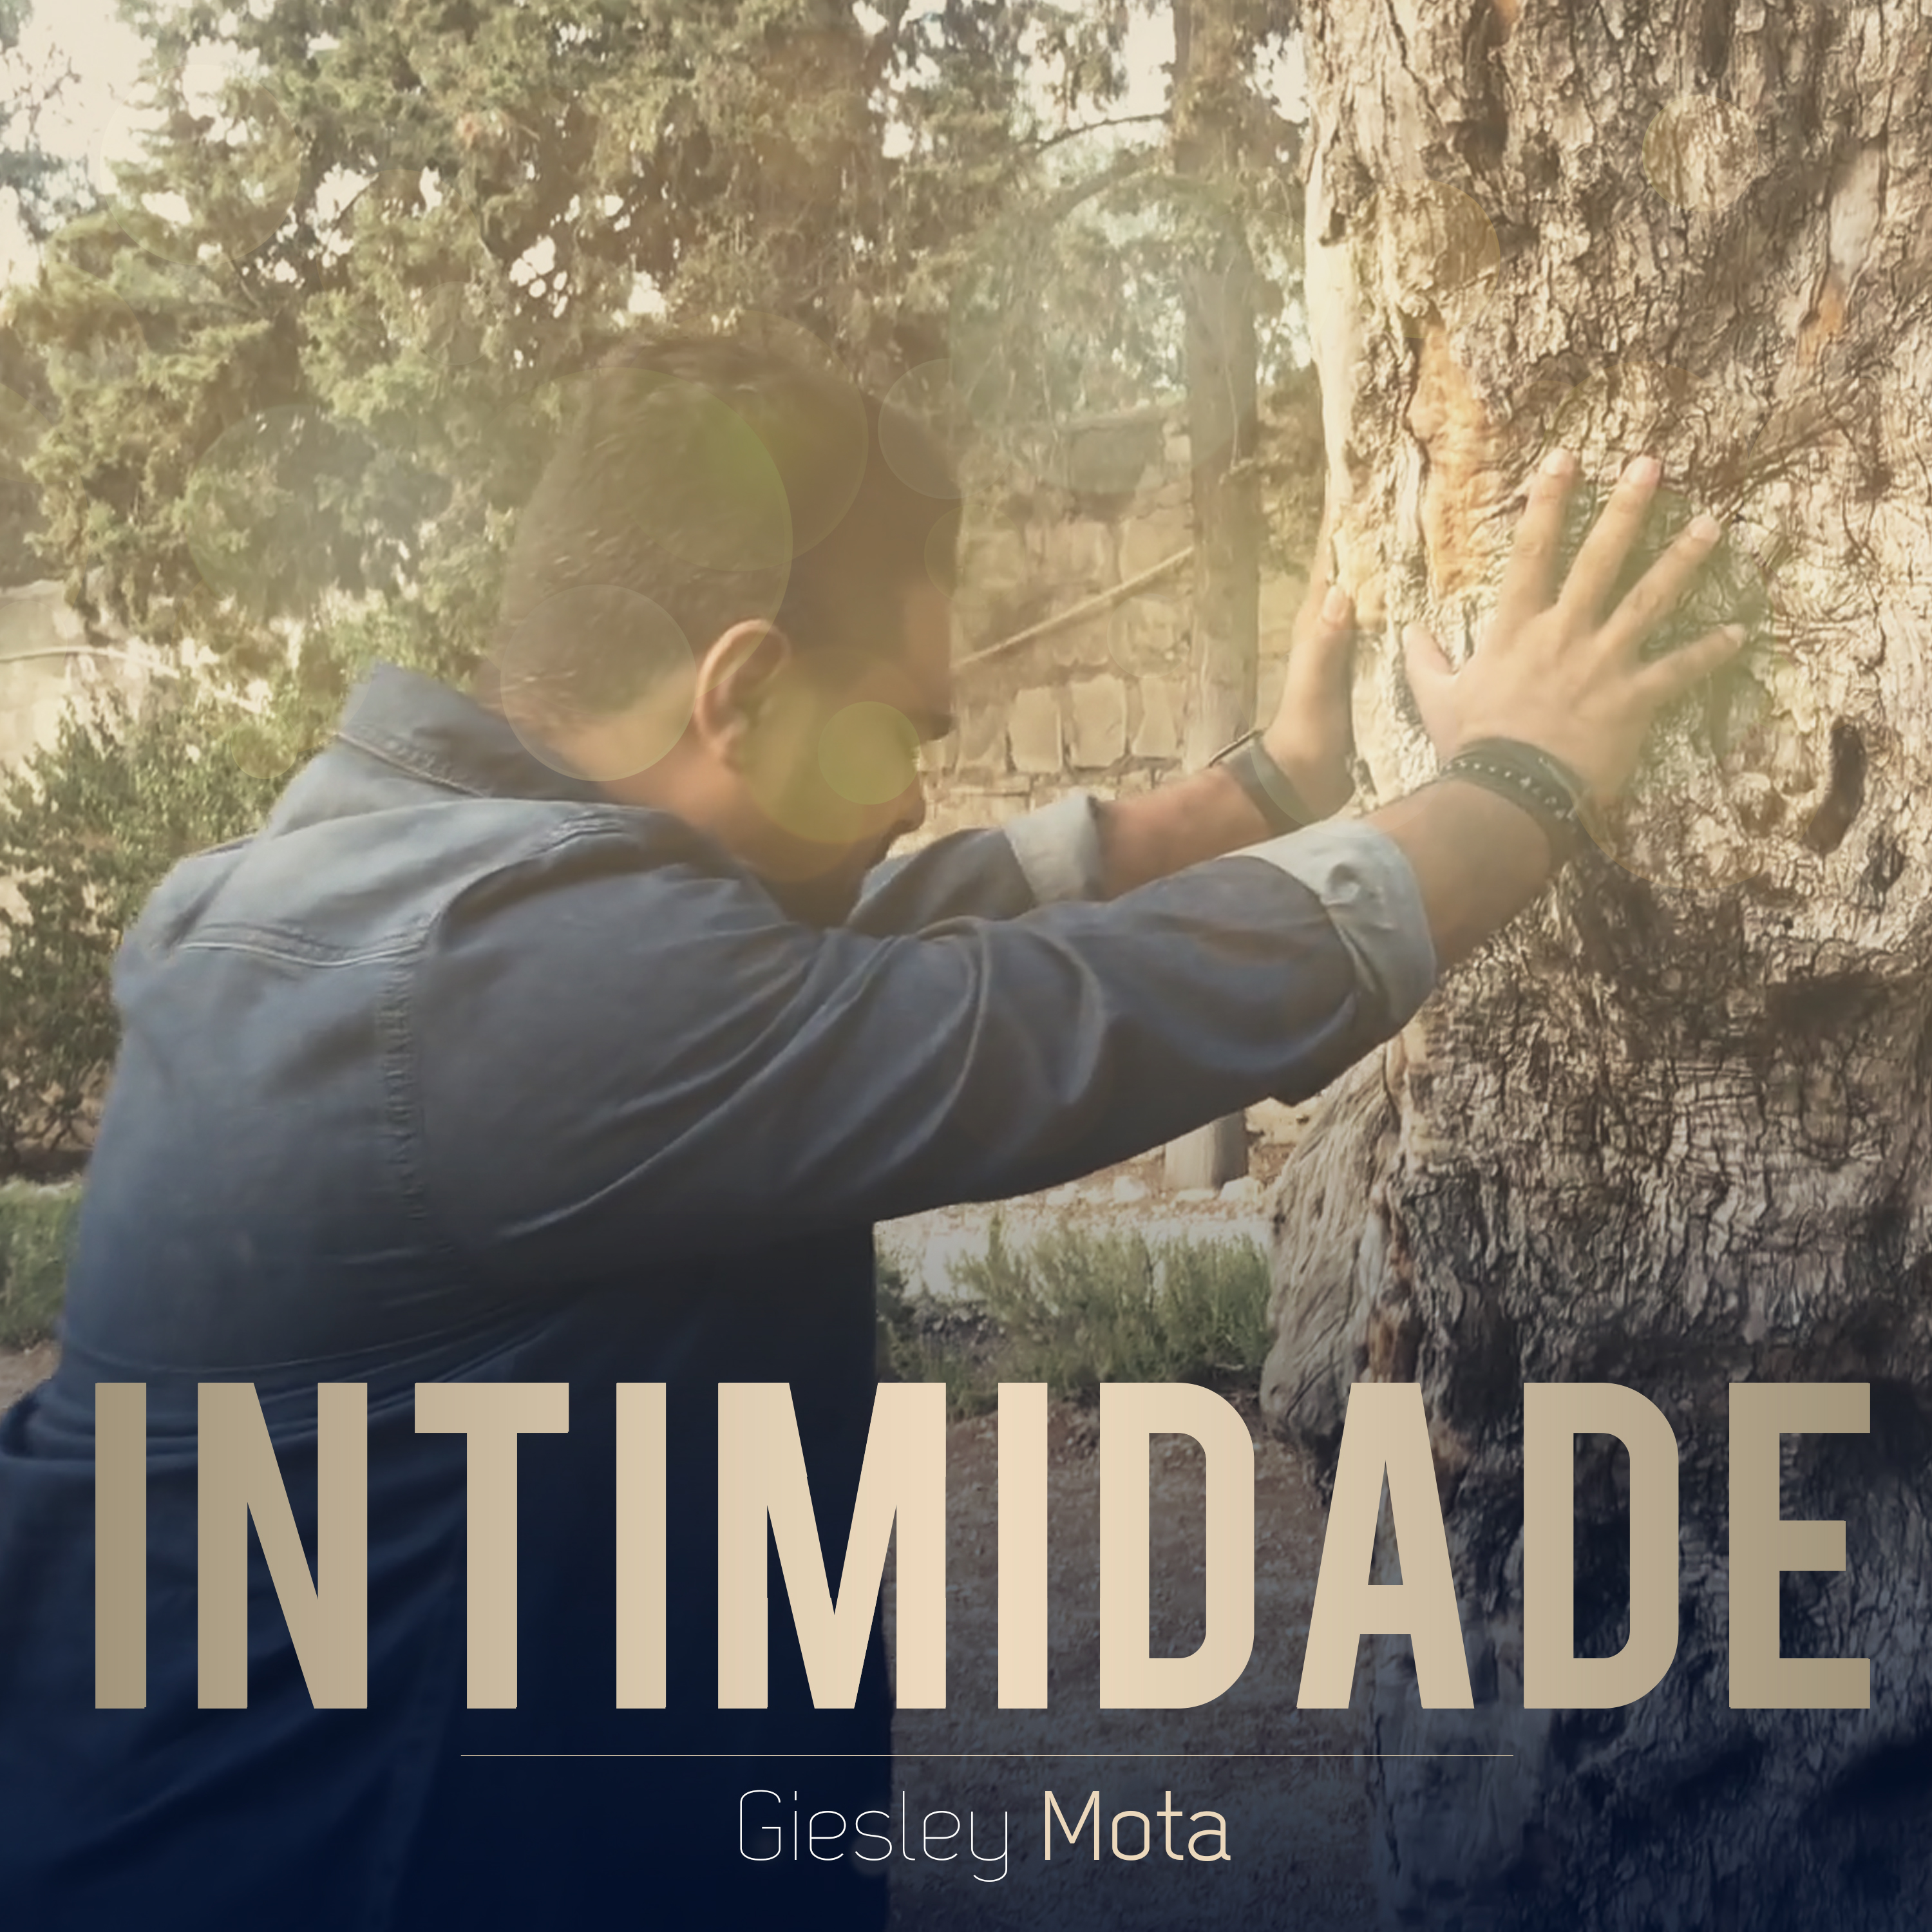 Giesley Mota lança seu novo single “Intimidade” no dia 17 de julho